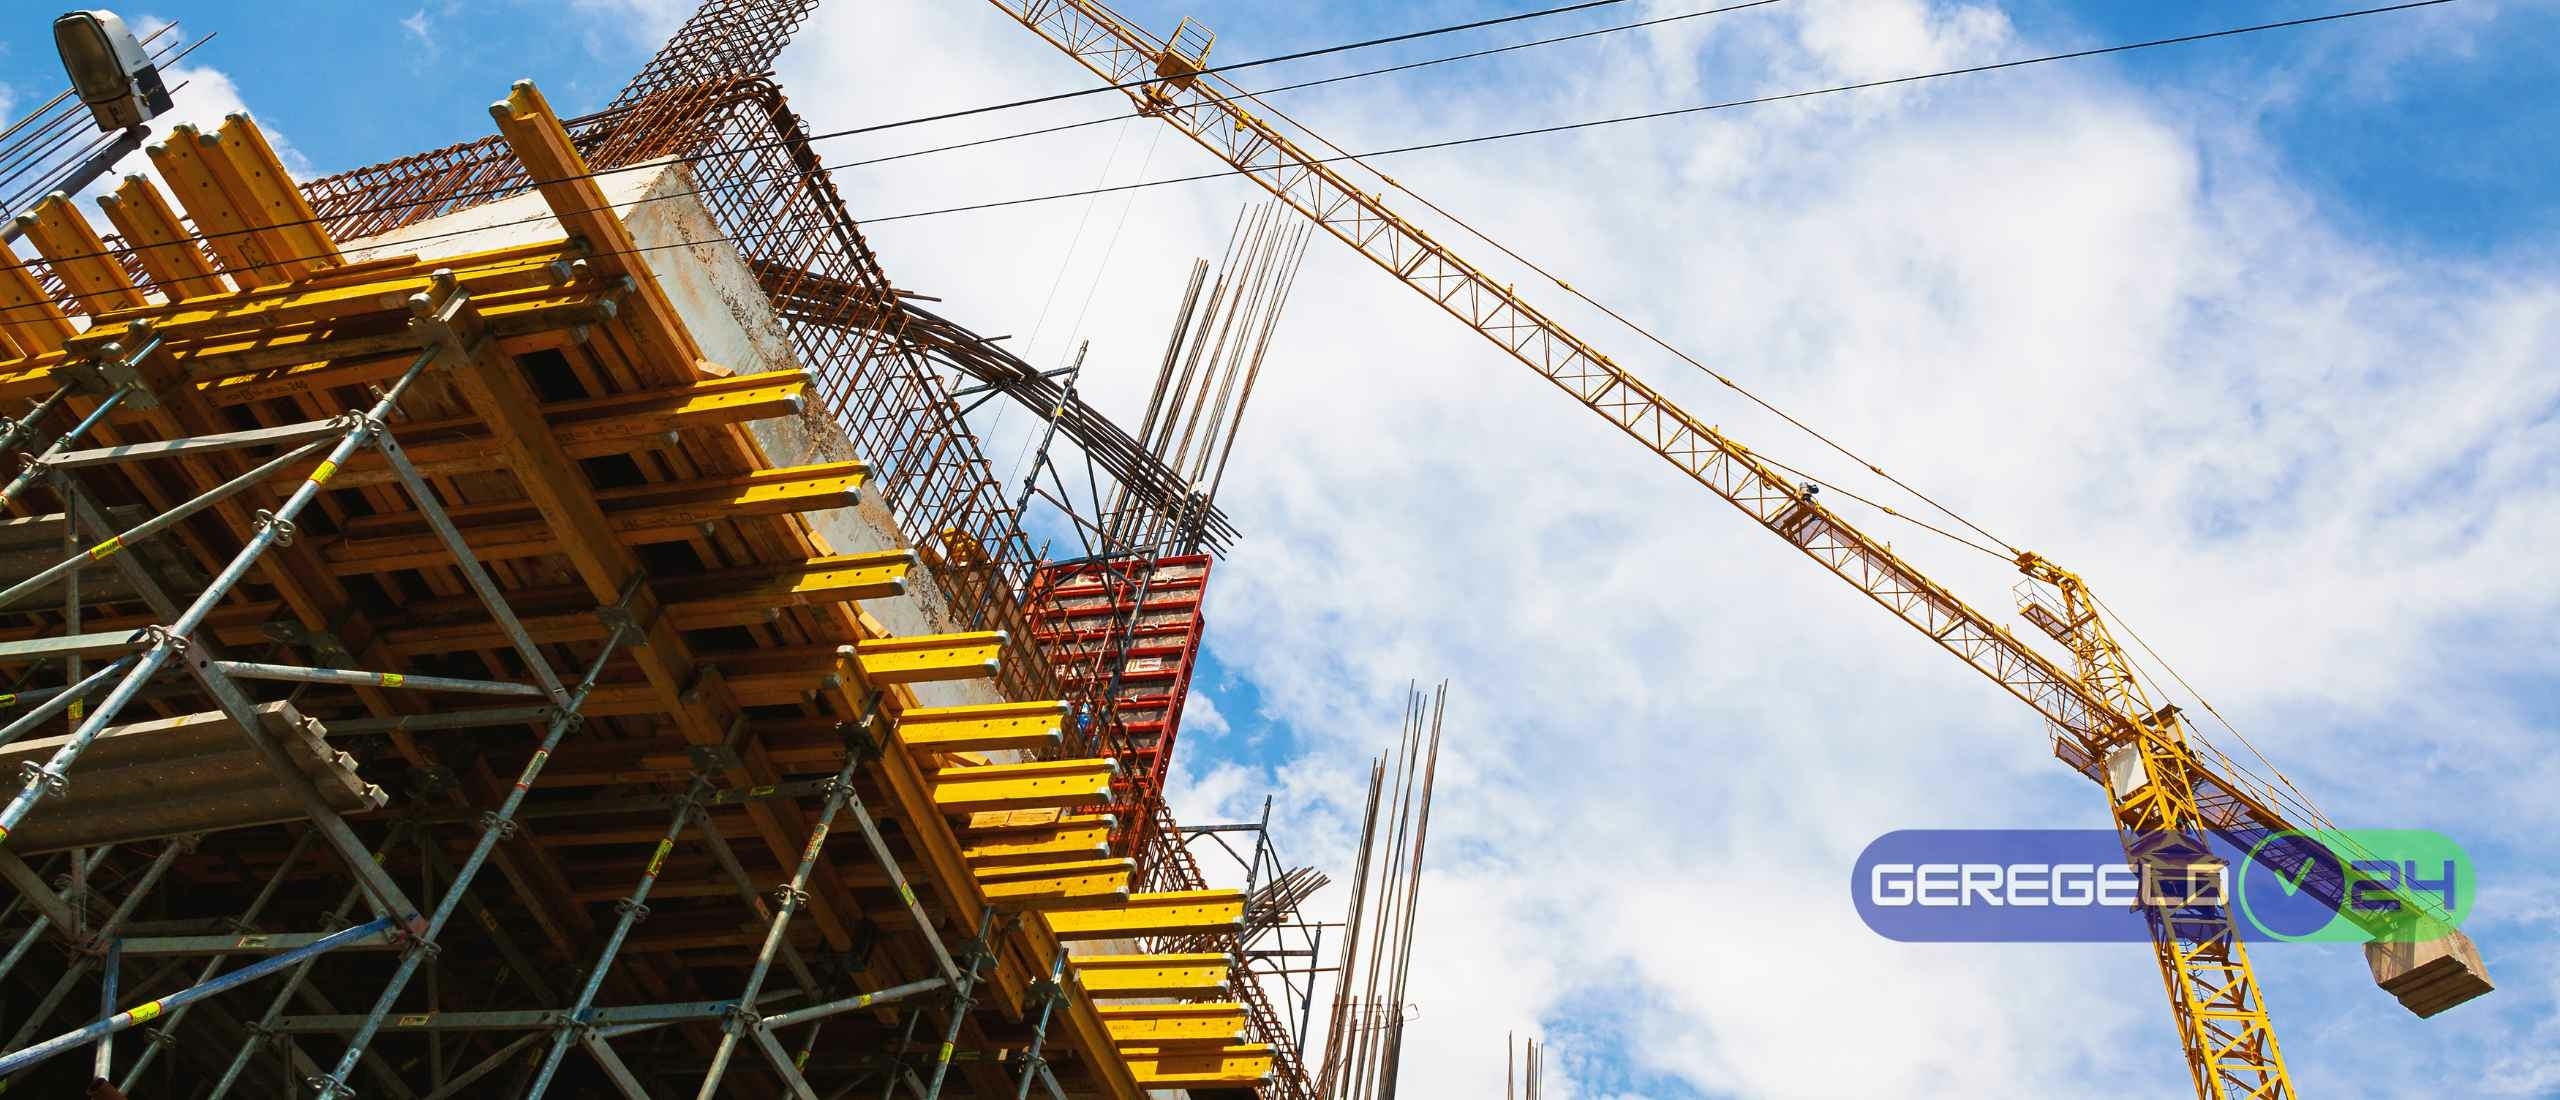 Aantal bouwvergunningen afgenomen en bouwcrisis dreigt